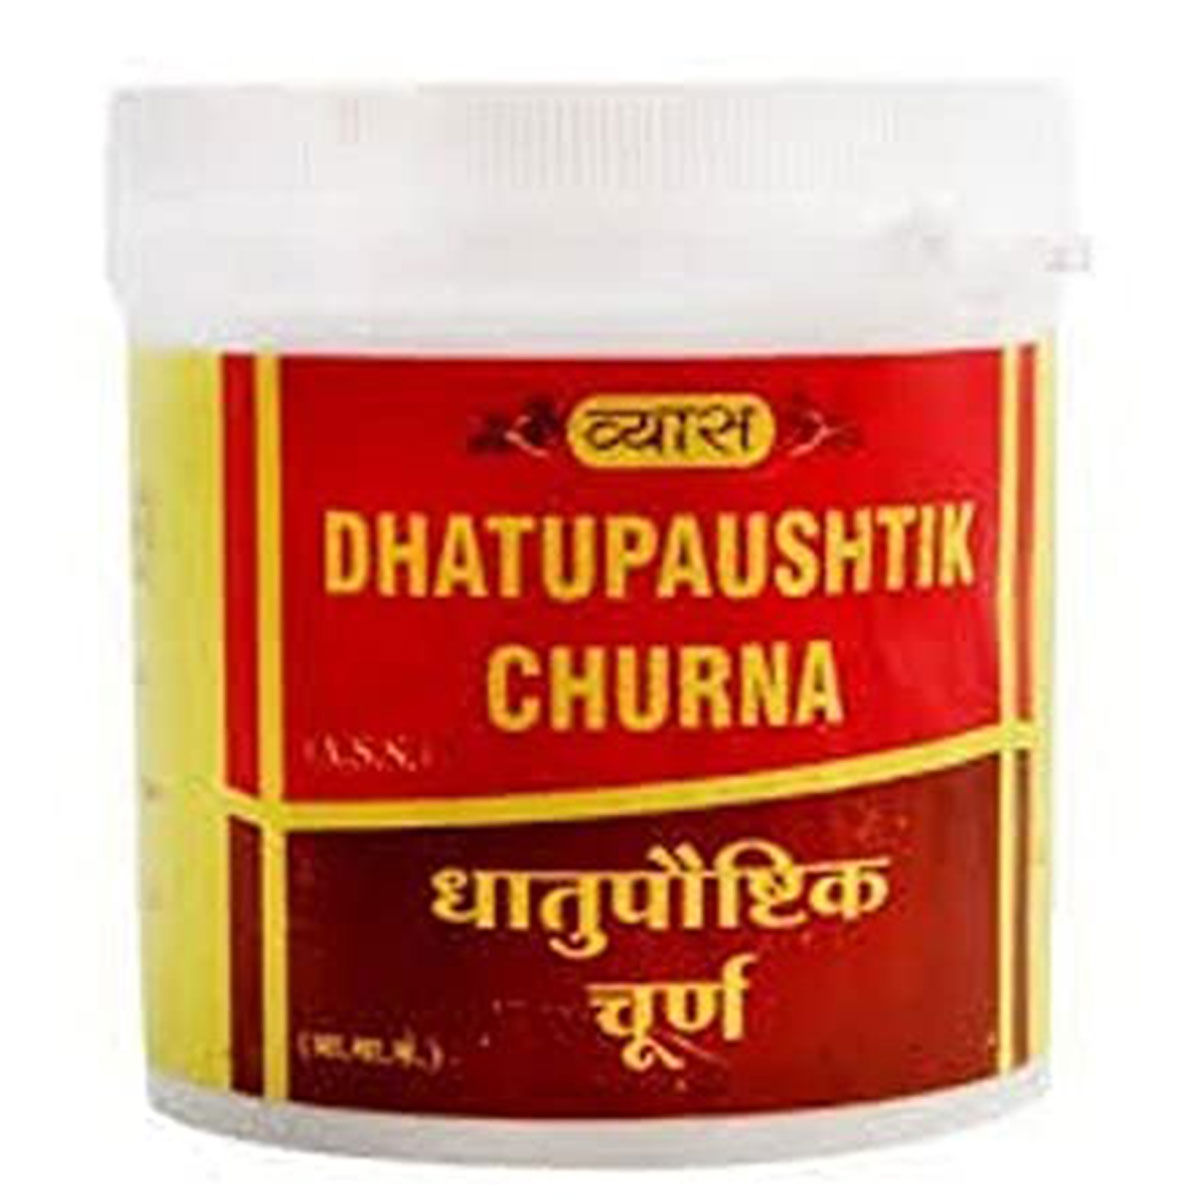 Buy Vyas Dhatupaushtik Churna, 100 gm Online